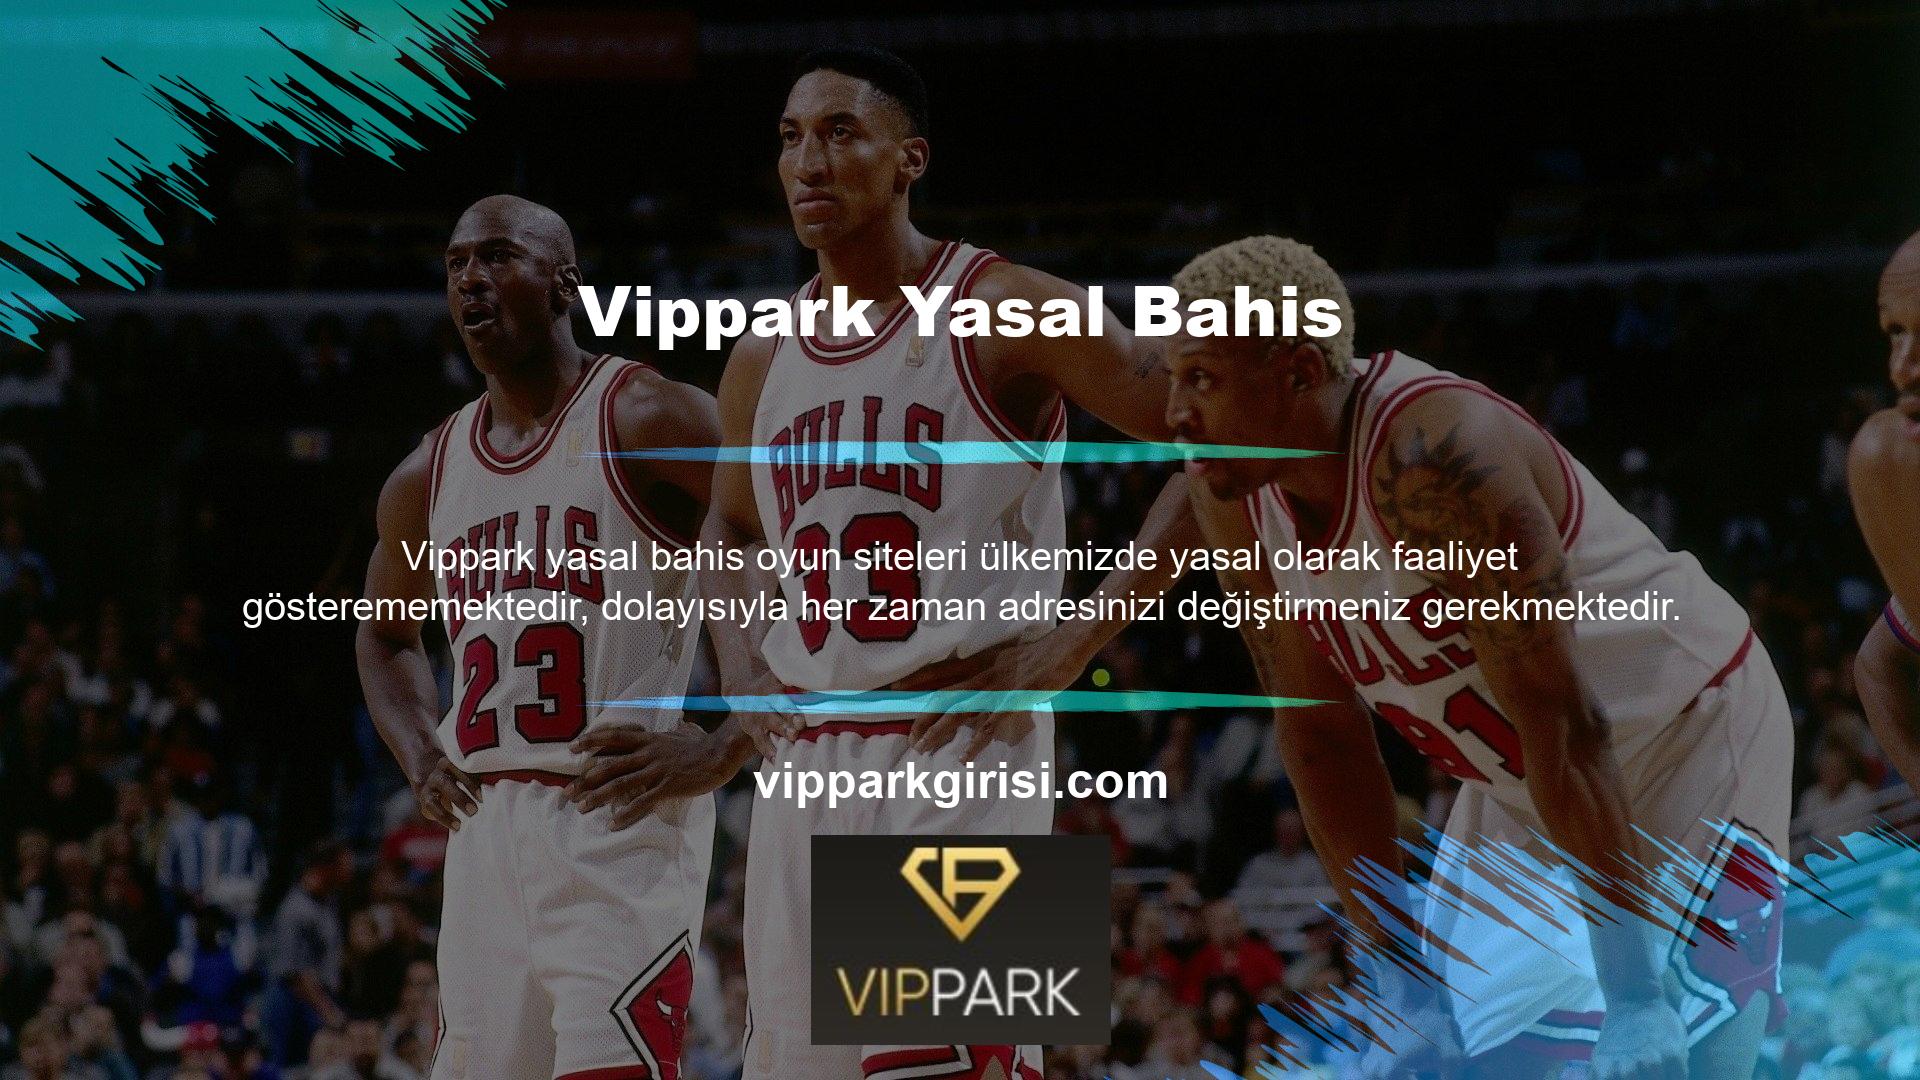 Vippark Gaming Sitesi'nin adresinin değişmesi halinde kullanıcılara güvenilir ve güncel bir adres sunmak amacıyla adresi bu web sitesinde ve sosyal medya platformlarında yayınlamaya devam edeceğiz